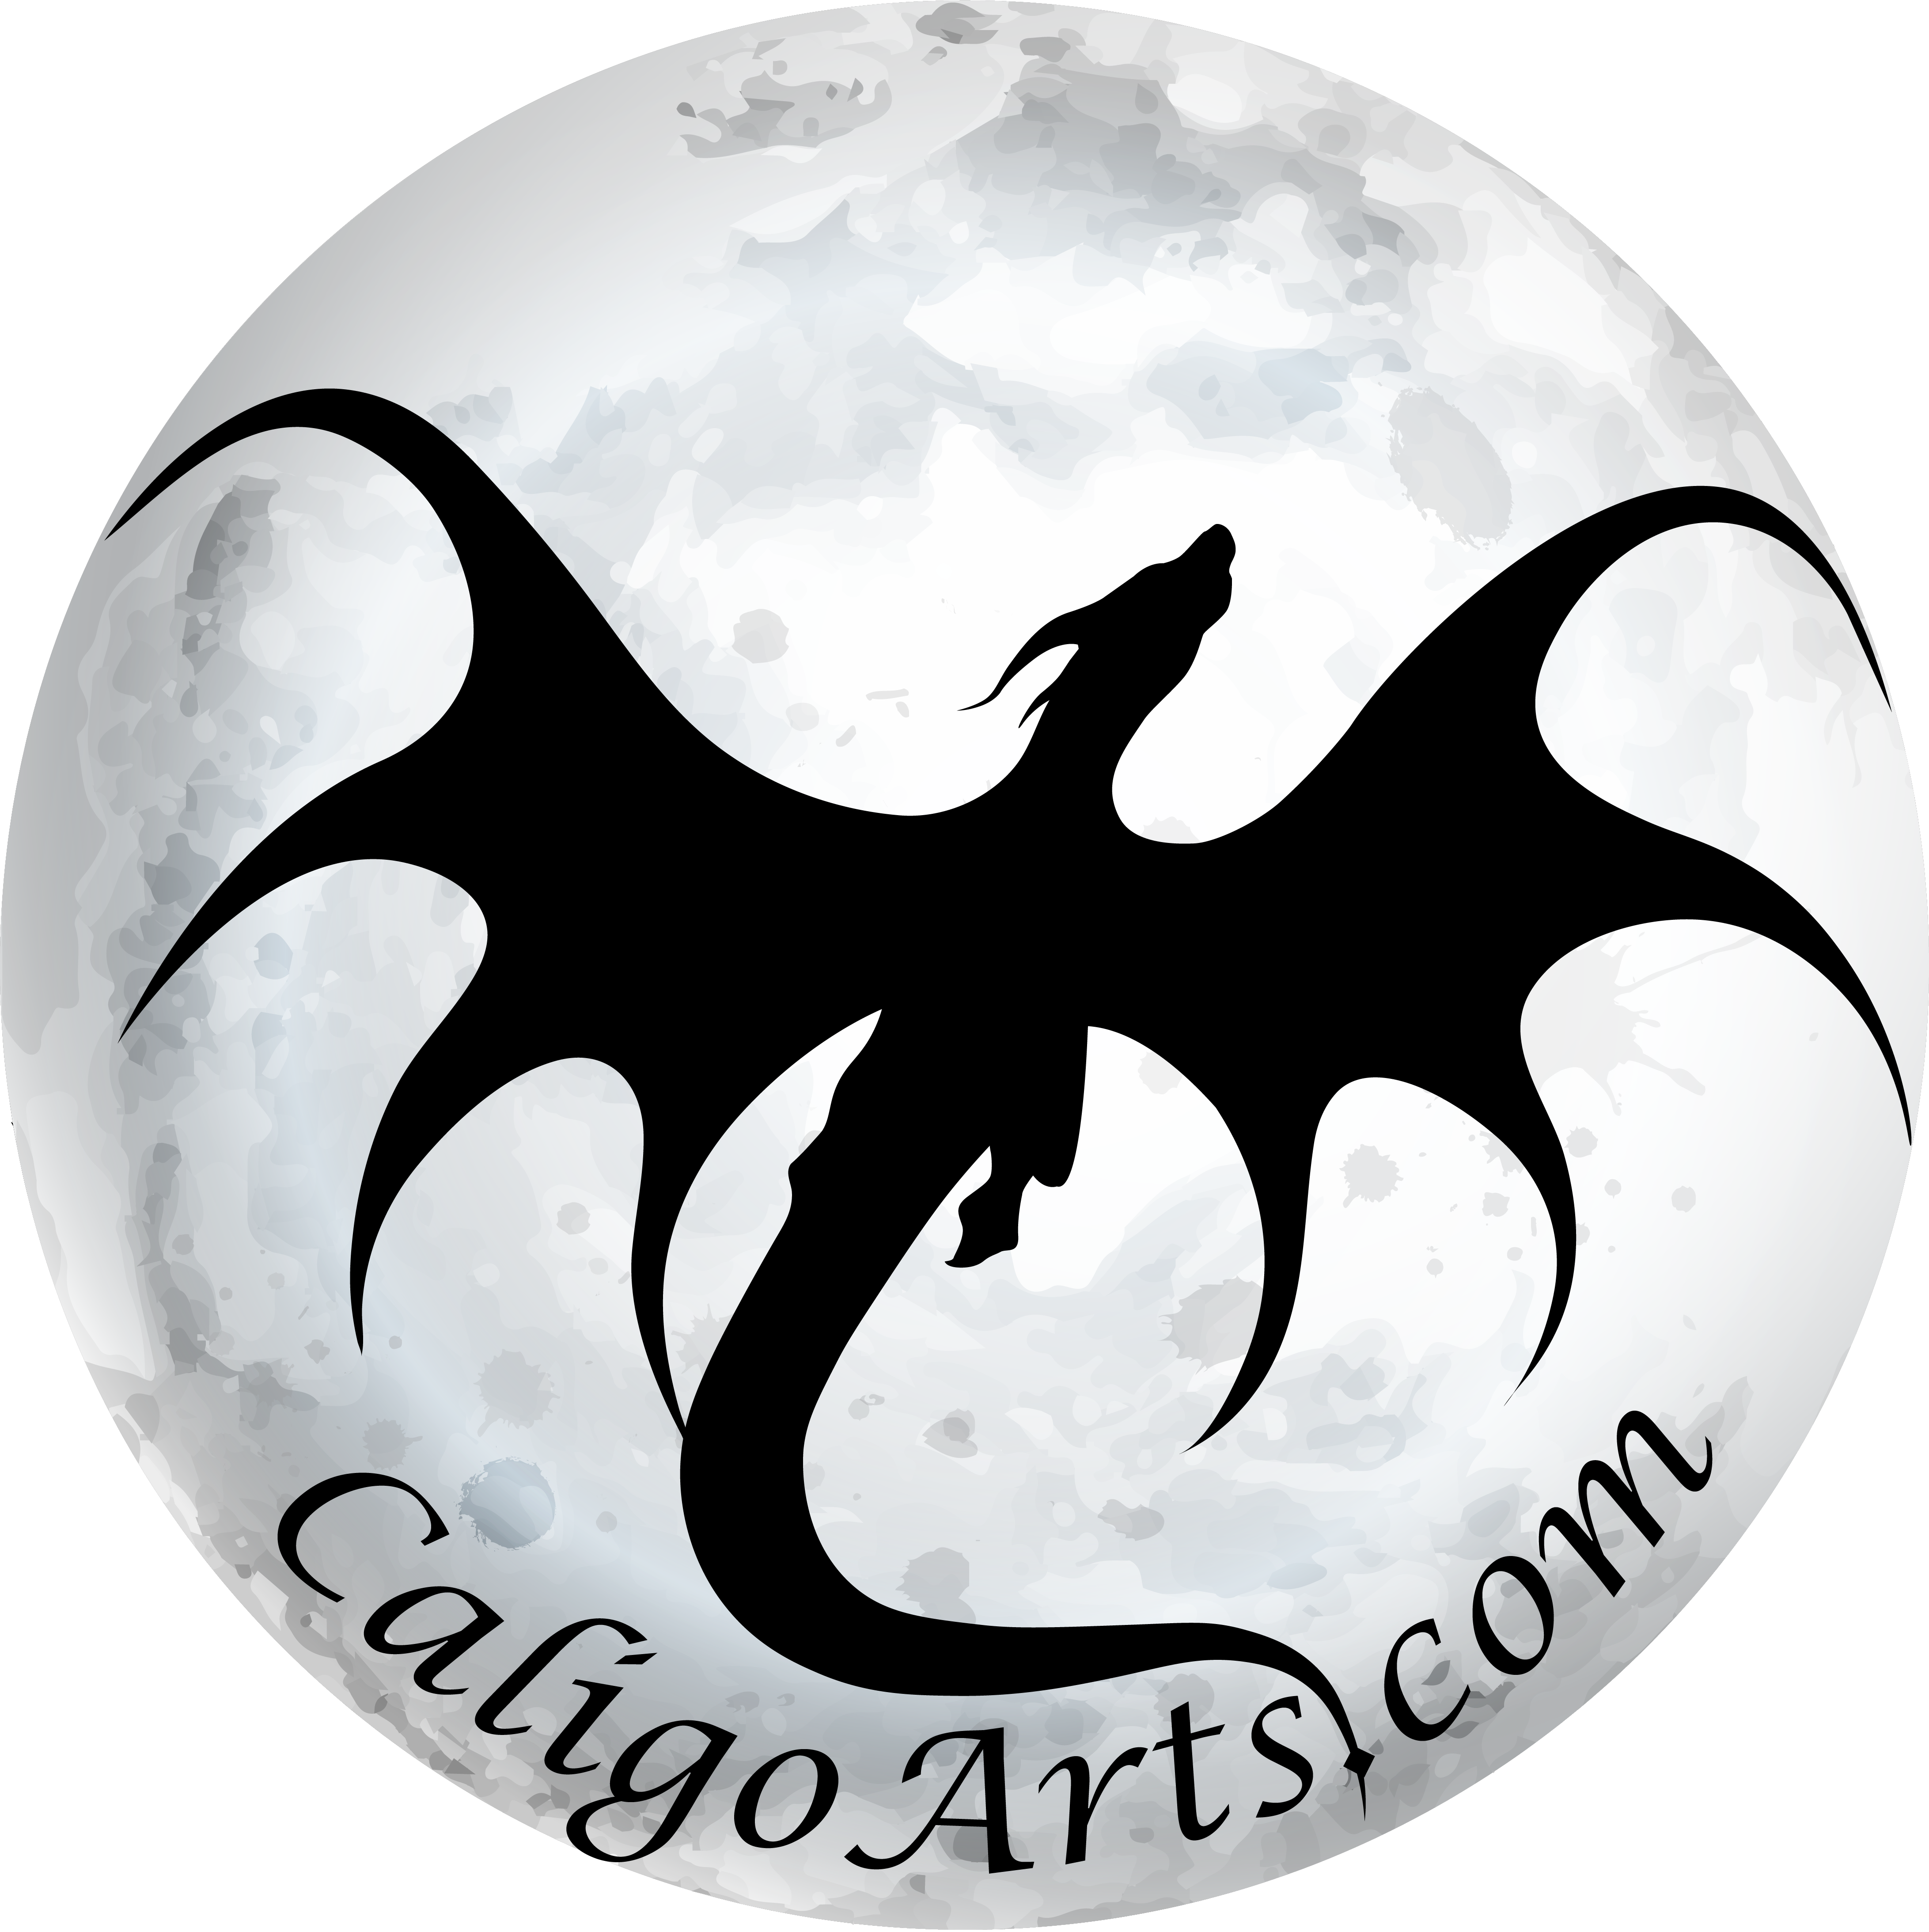 (Caligo Arts Logo Thumbnail)